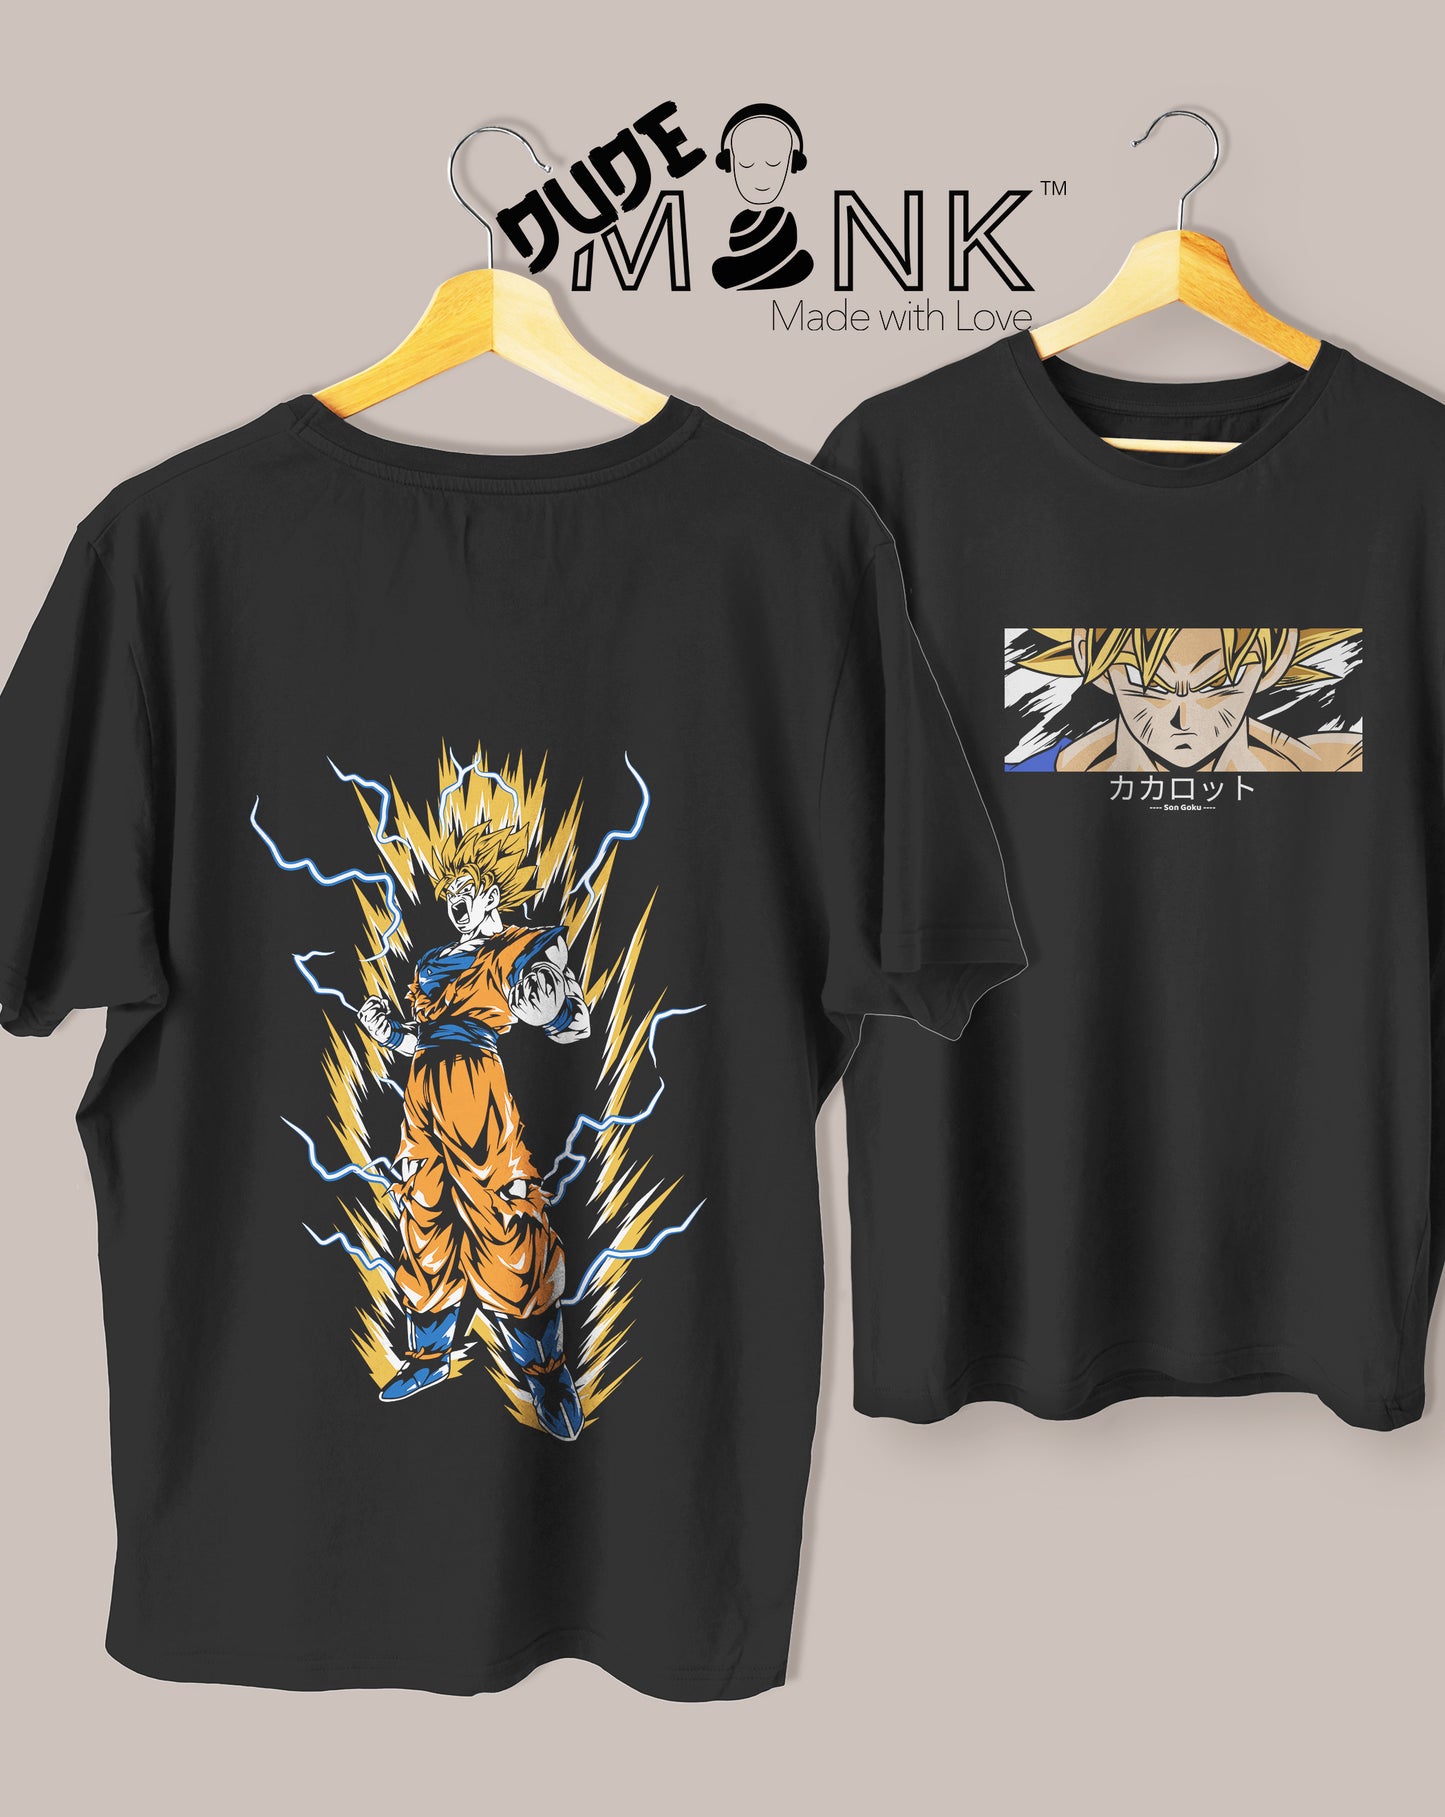 Goku oversized tshirt design